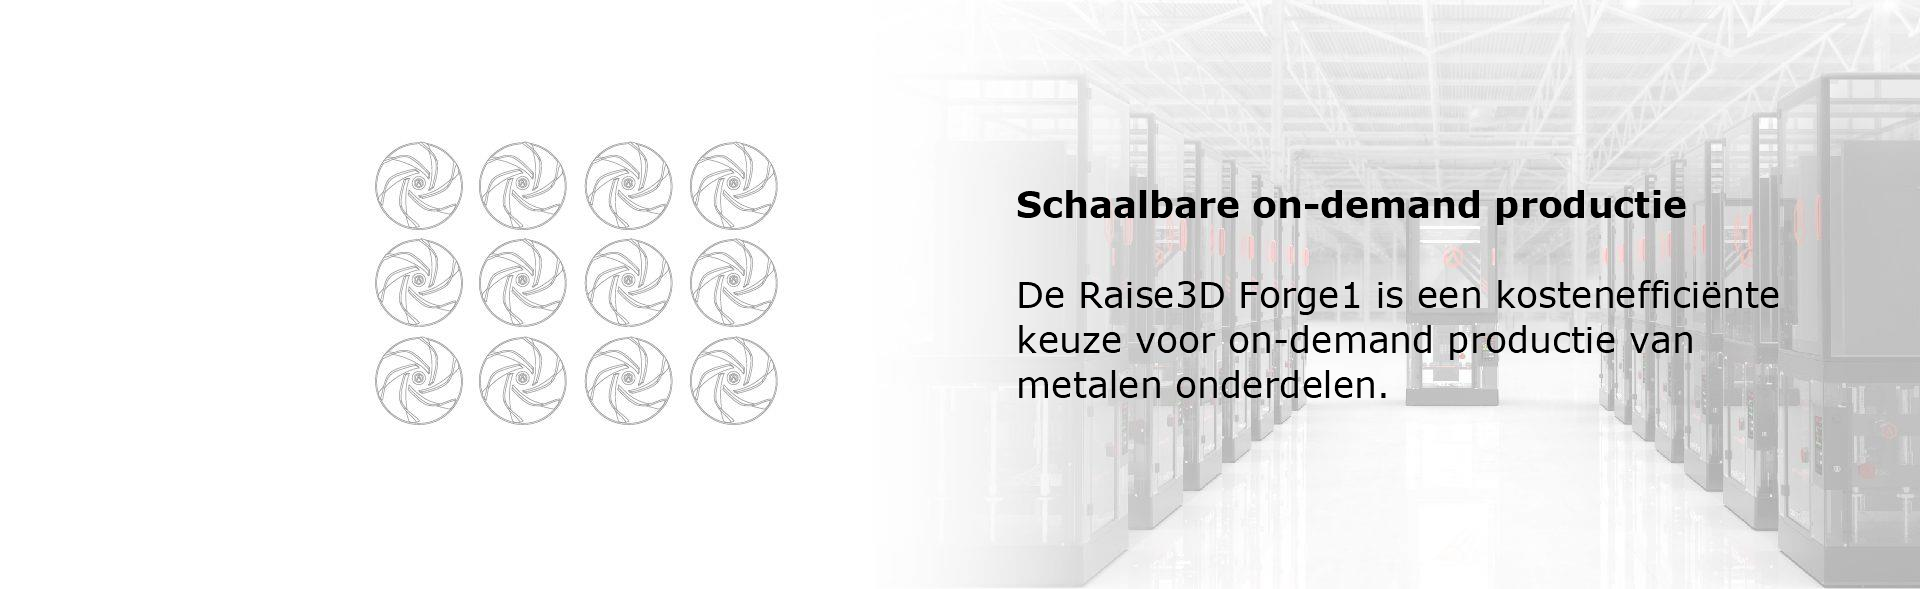 Schaalbare on-demand productie  De Raise3D Forge1 is een kostenefficiënte keuze voor on-demand productie van metalen onderdelen.